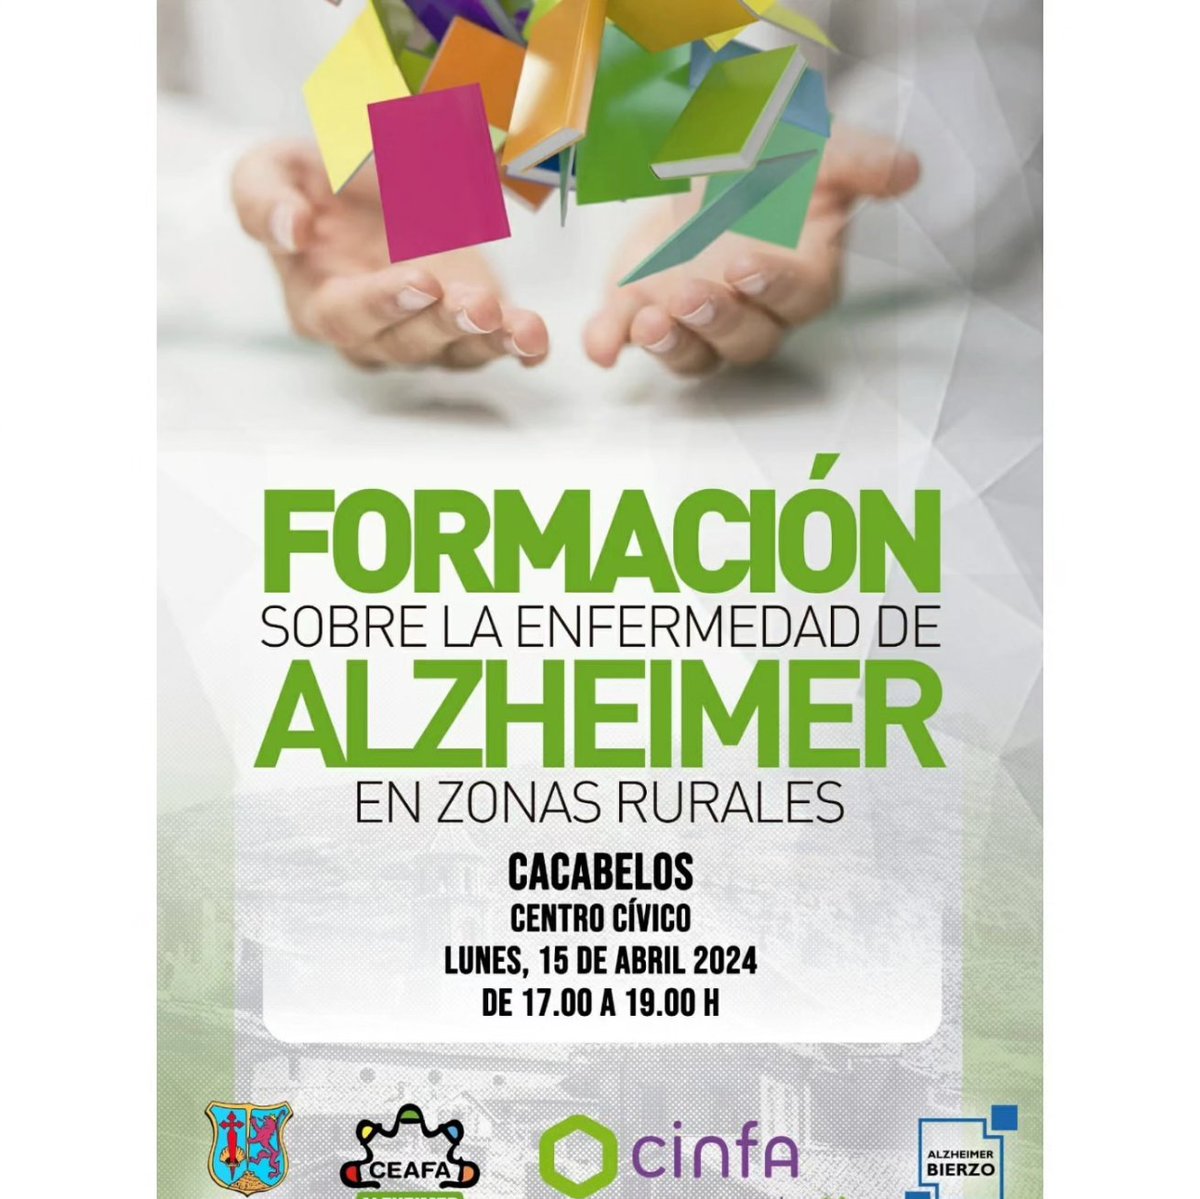 📣 Continuamos la '#Formación sobre la Enfermedad de #Alzheimer en #zonasrurales'. 👉Hoy lunes 15 de abril a las 17:00 h en el Centro Cívico de #CACABELOS. 🌟 Impulsada por @AlzheimerCeafa y @CinfaSalud con el objetivo de informar y formar a la sociedad.Colabora @aytocacabelos.